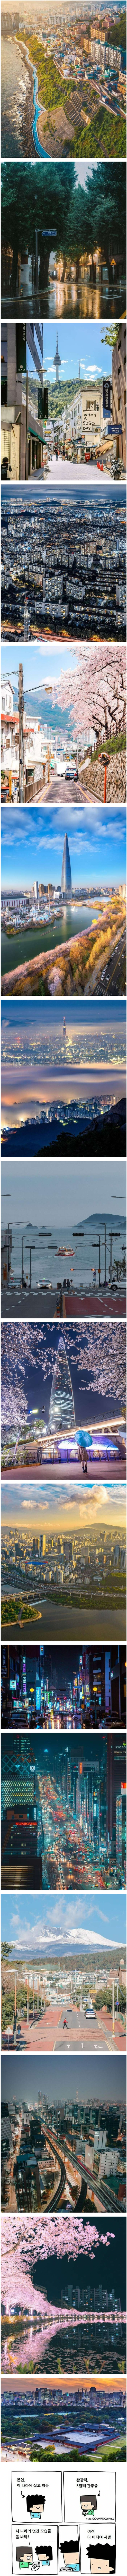 レディットの人気書き込みに掲載された韓国の風景写真